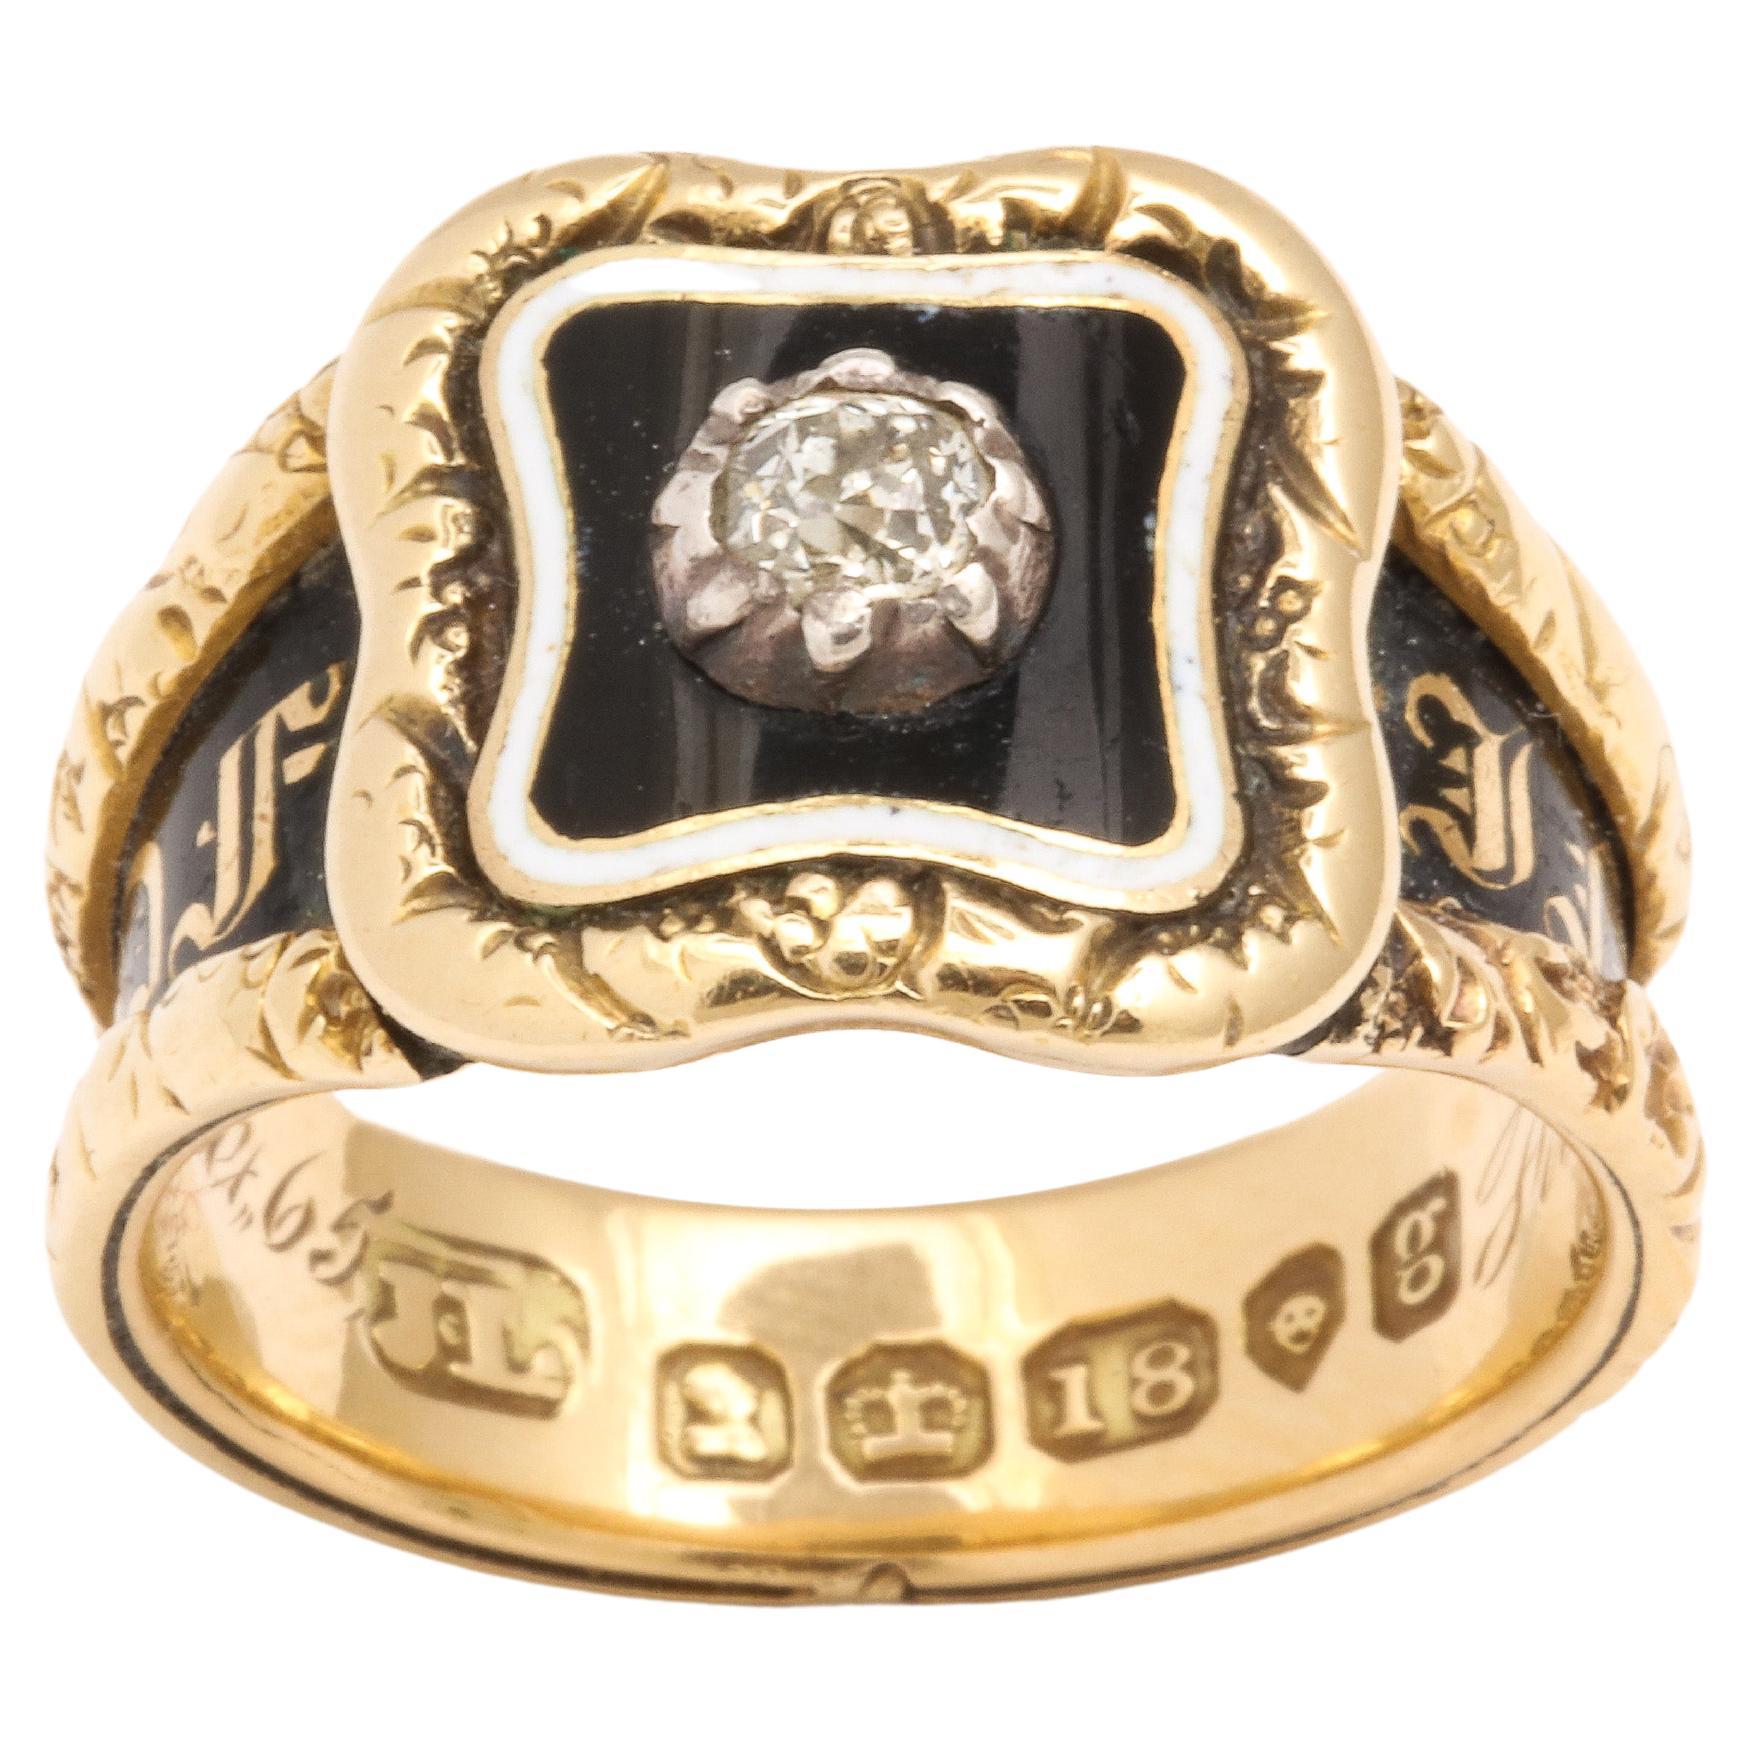 Ein historischer, mittelgroßer Ring mit 18 Karat und Diamanten, so gut wie möglich, wurde von John Linnet hergestellt.
Hänfling  war bekannt für feine und delikate Arbeiten. Er fertigte Schmuckstücke für Königin Victoria an. Der Ring ist ein echtes